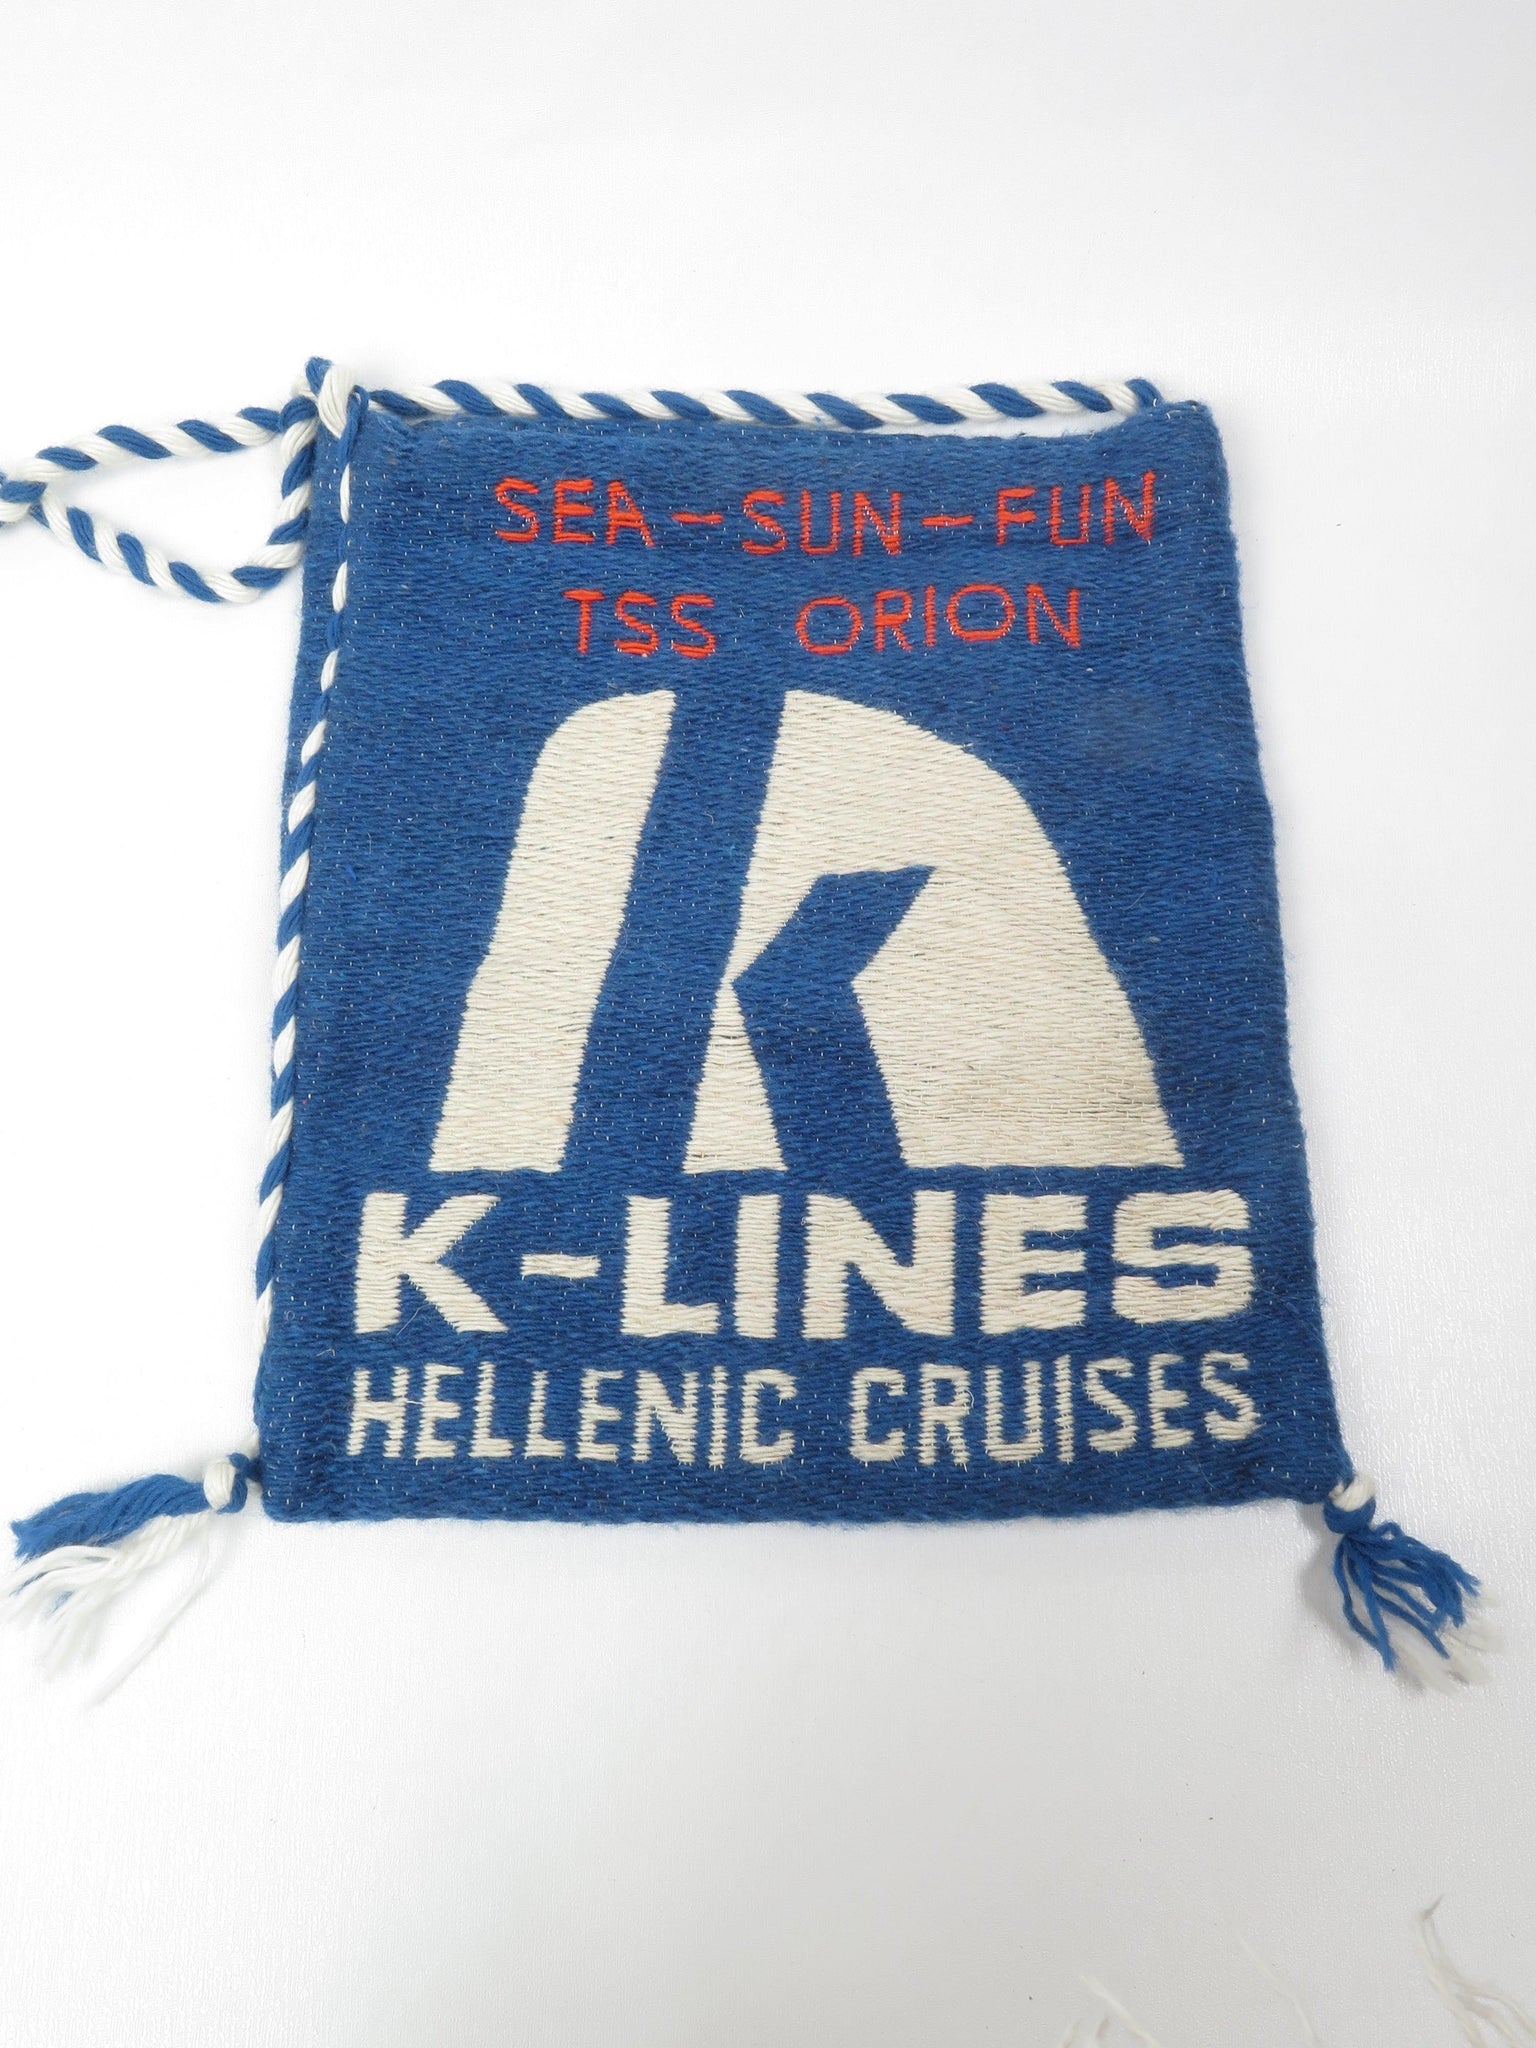 Vintage Greek Island Ferry Bag - The Harlequin